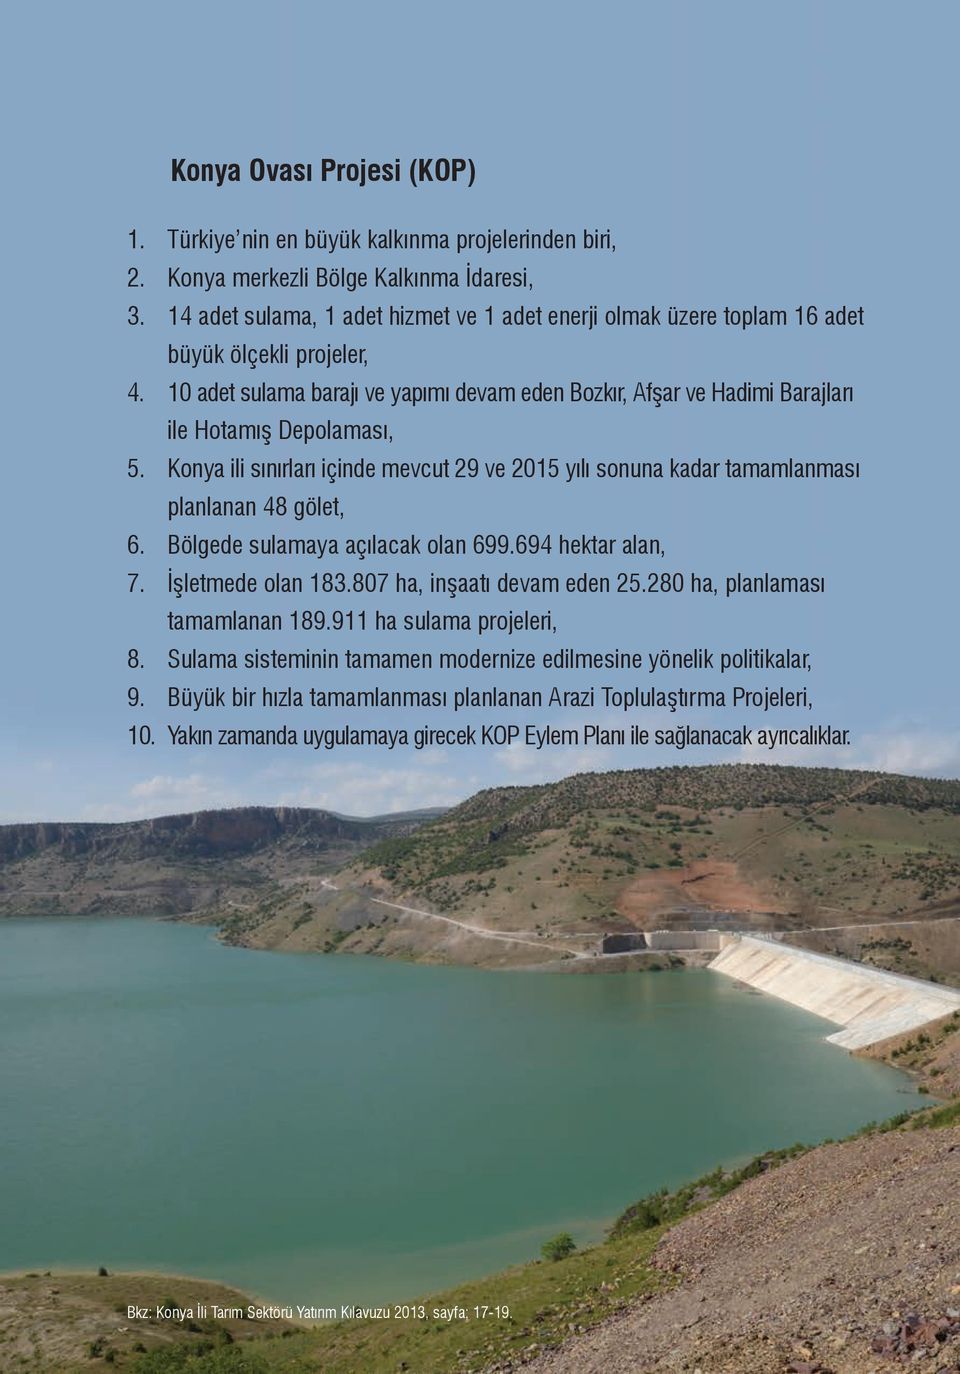 10 adet sulama barajı ve yapımı devam eden Bozkır, Afşar ve Hadimi Barajları ile Hotamış Depolaması, 5.